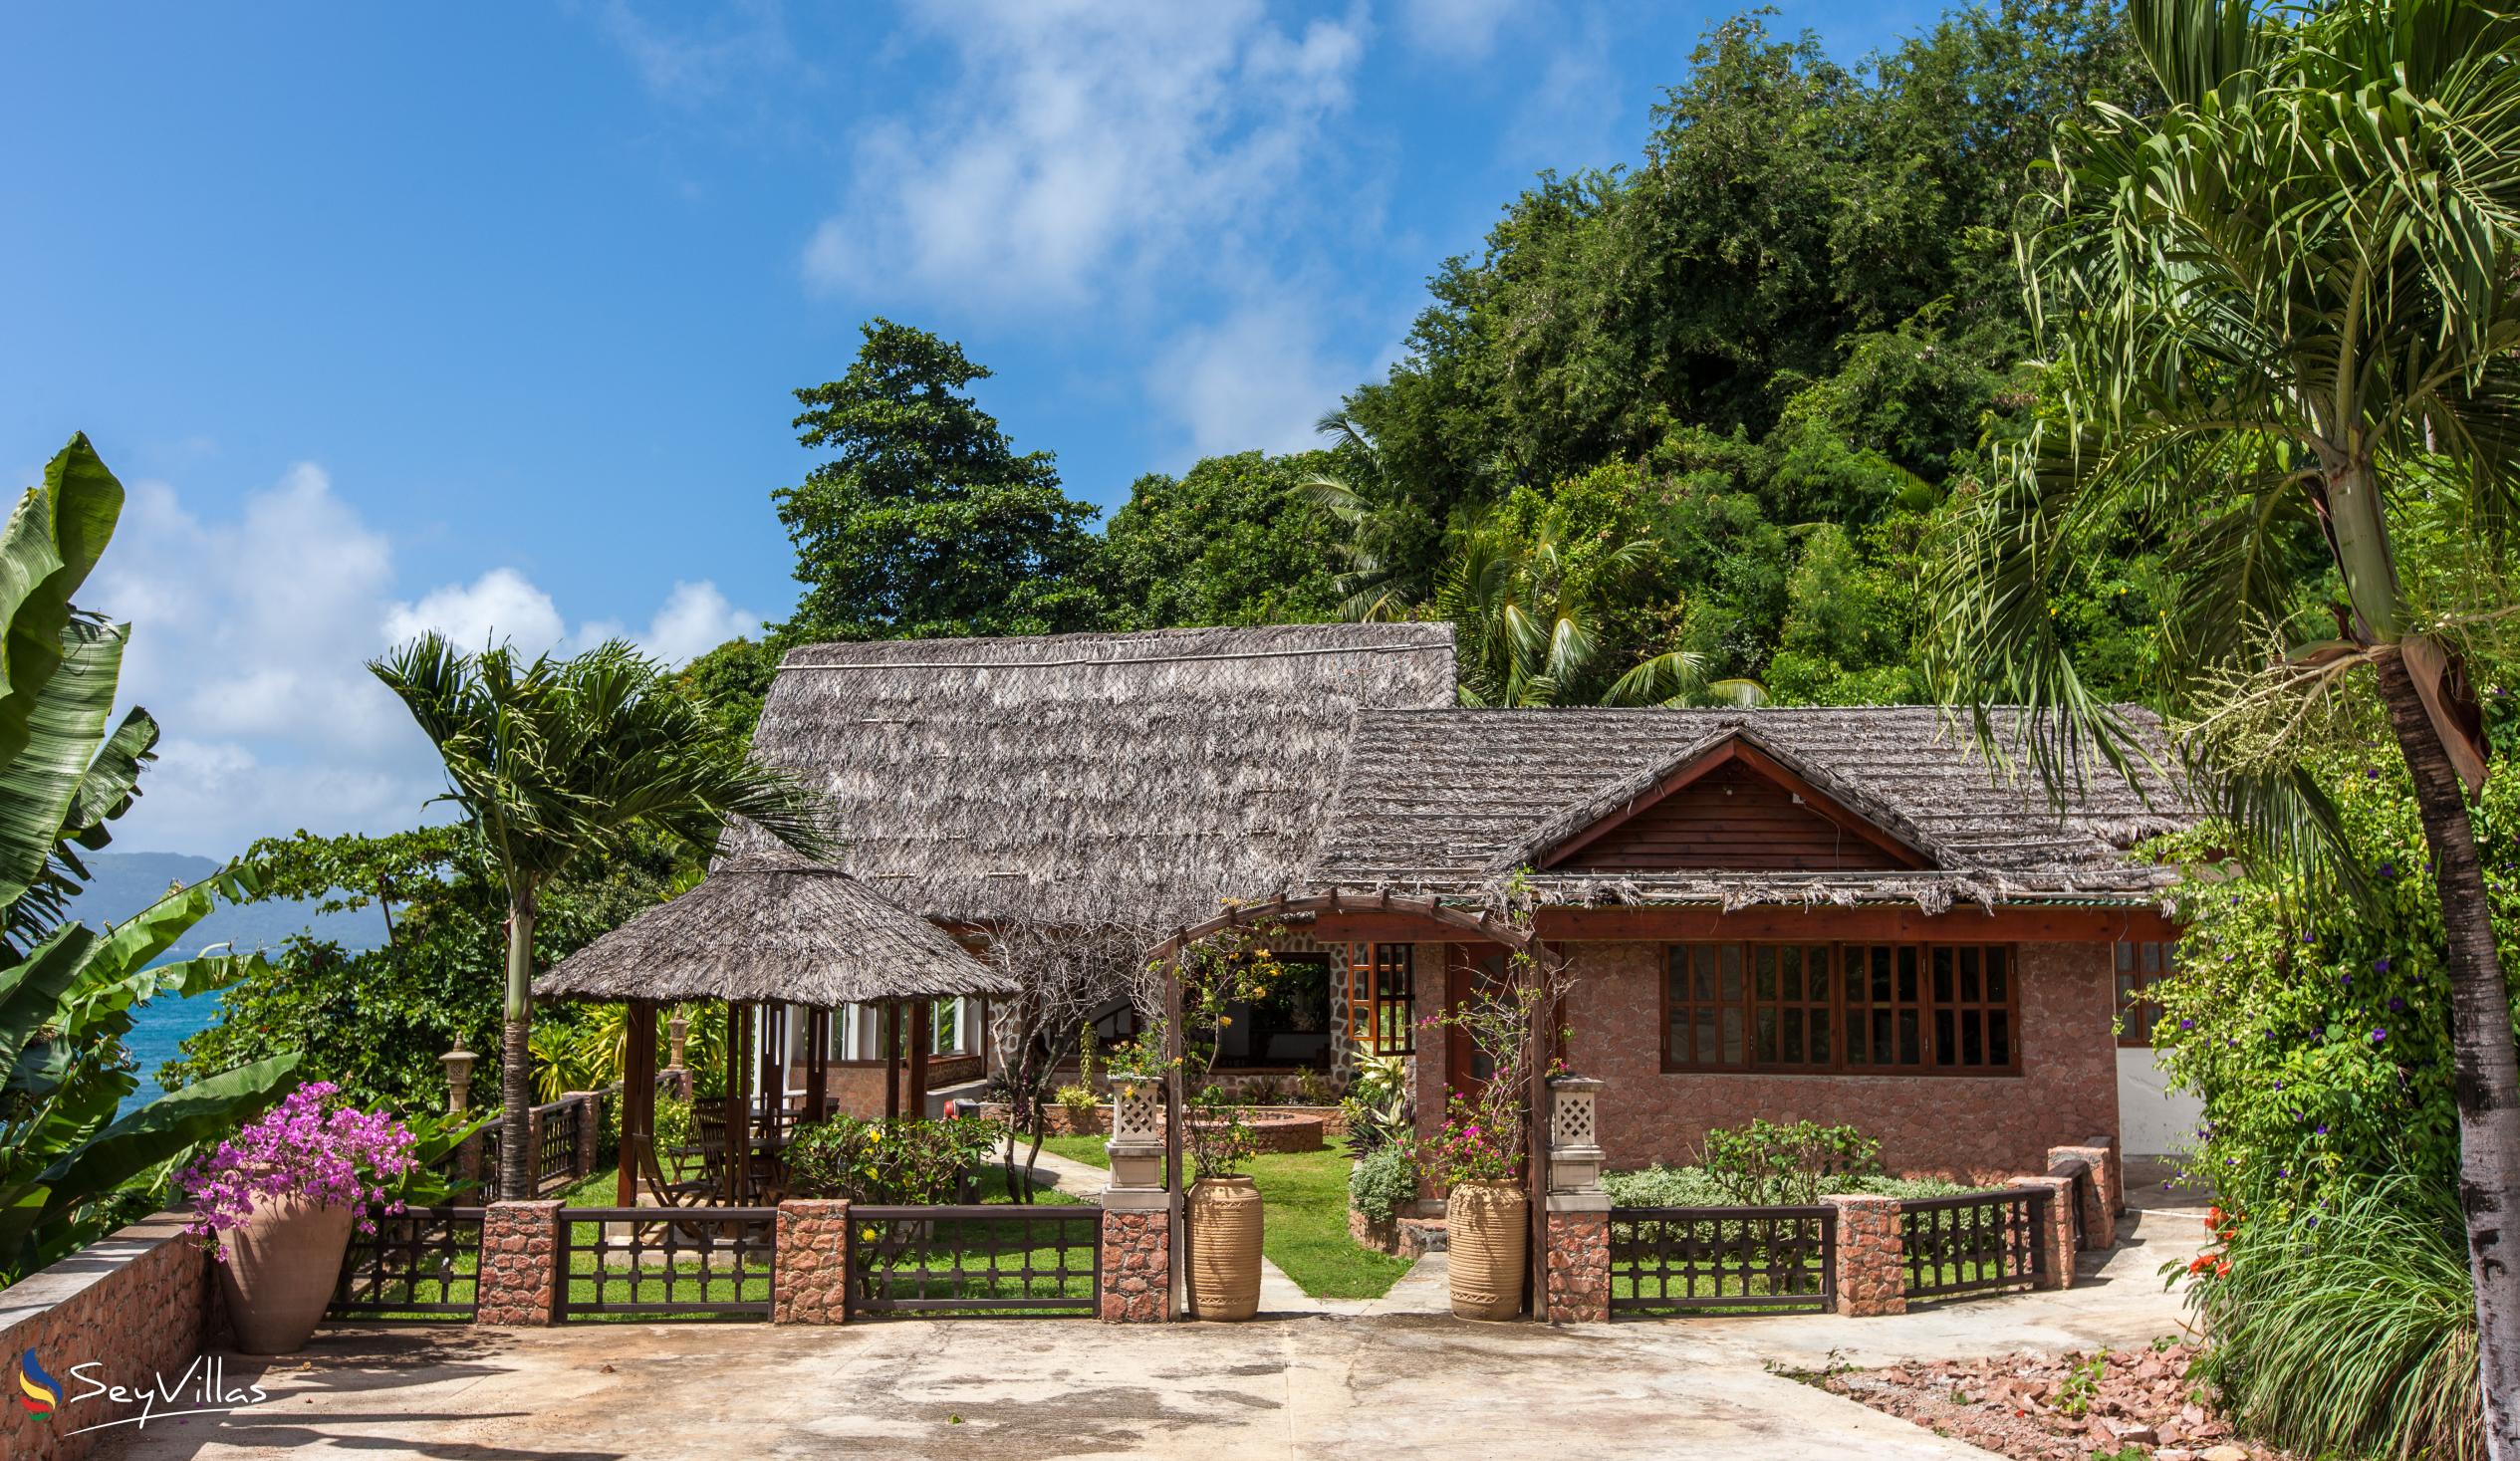 Foto 11: Colibri Guesthouse - Aussenbereich - Praslin (Seychellen)